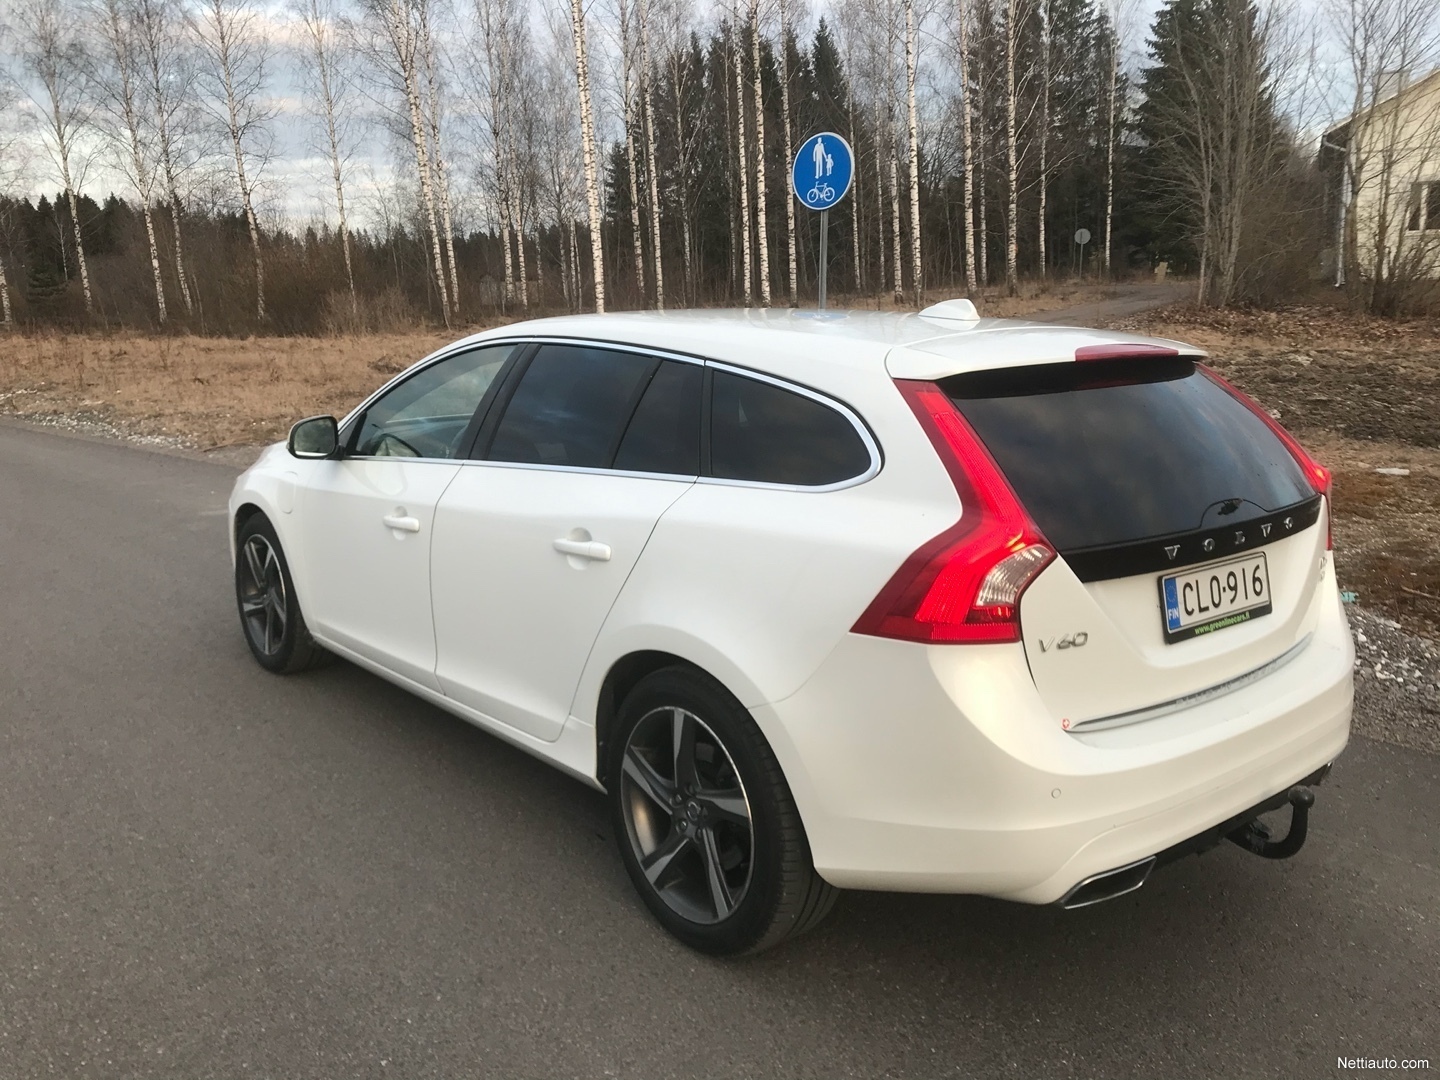 Volvo V60 kokemuksia - Lue käyttäjien autoarvostelut - Nettiauto